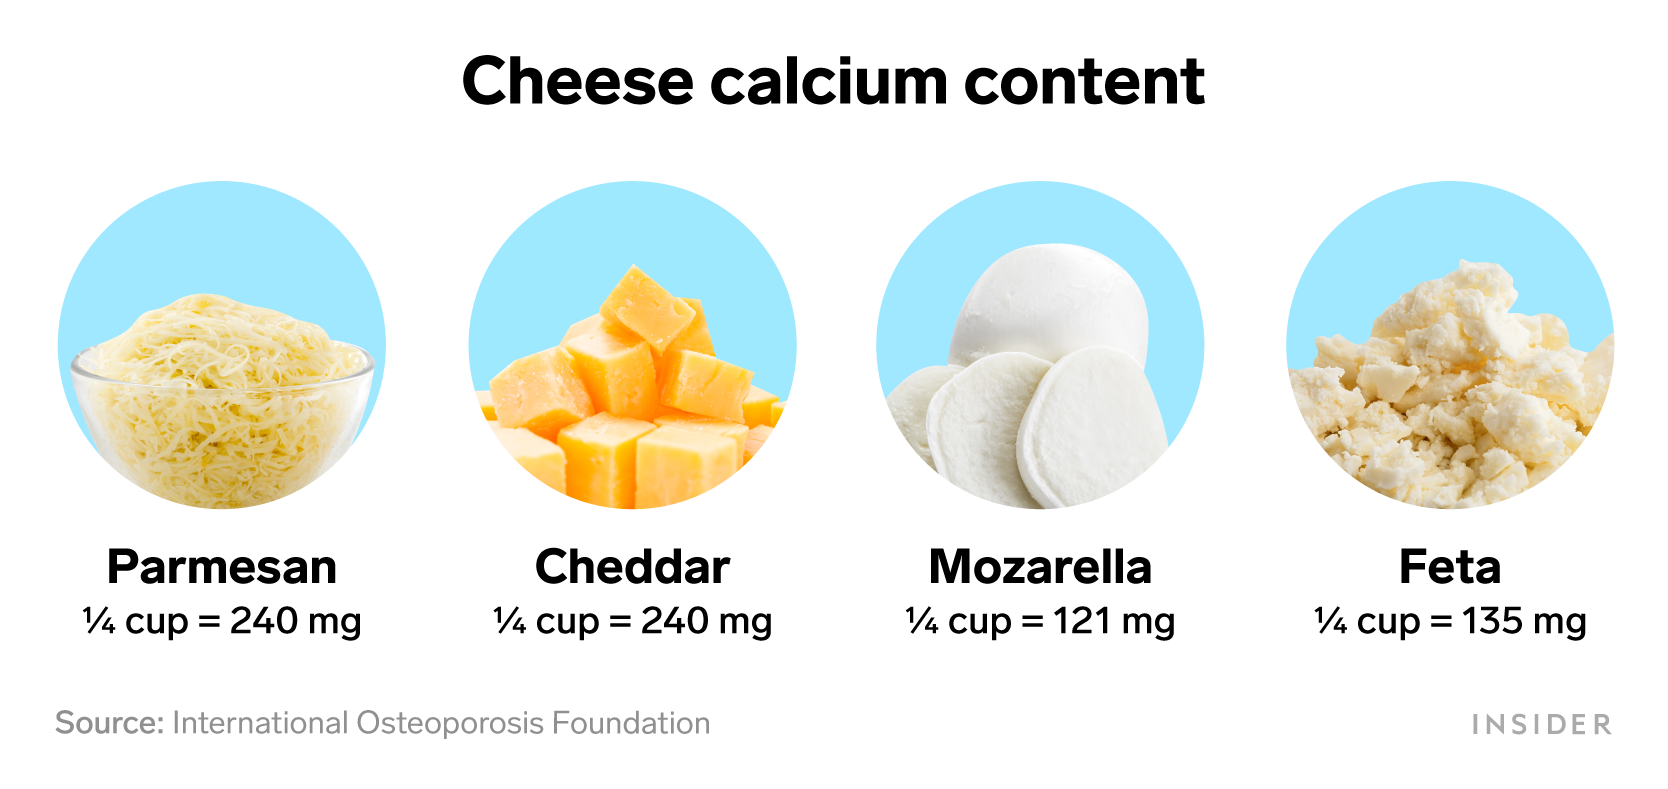 Foods that are rich in calcium: Cheese calcium content